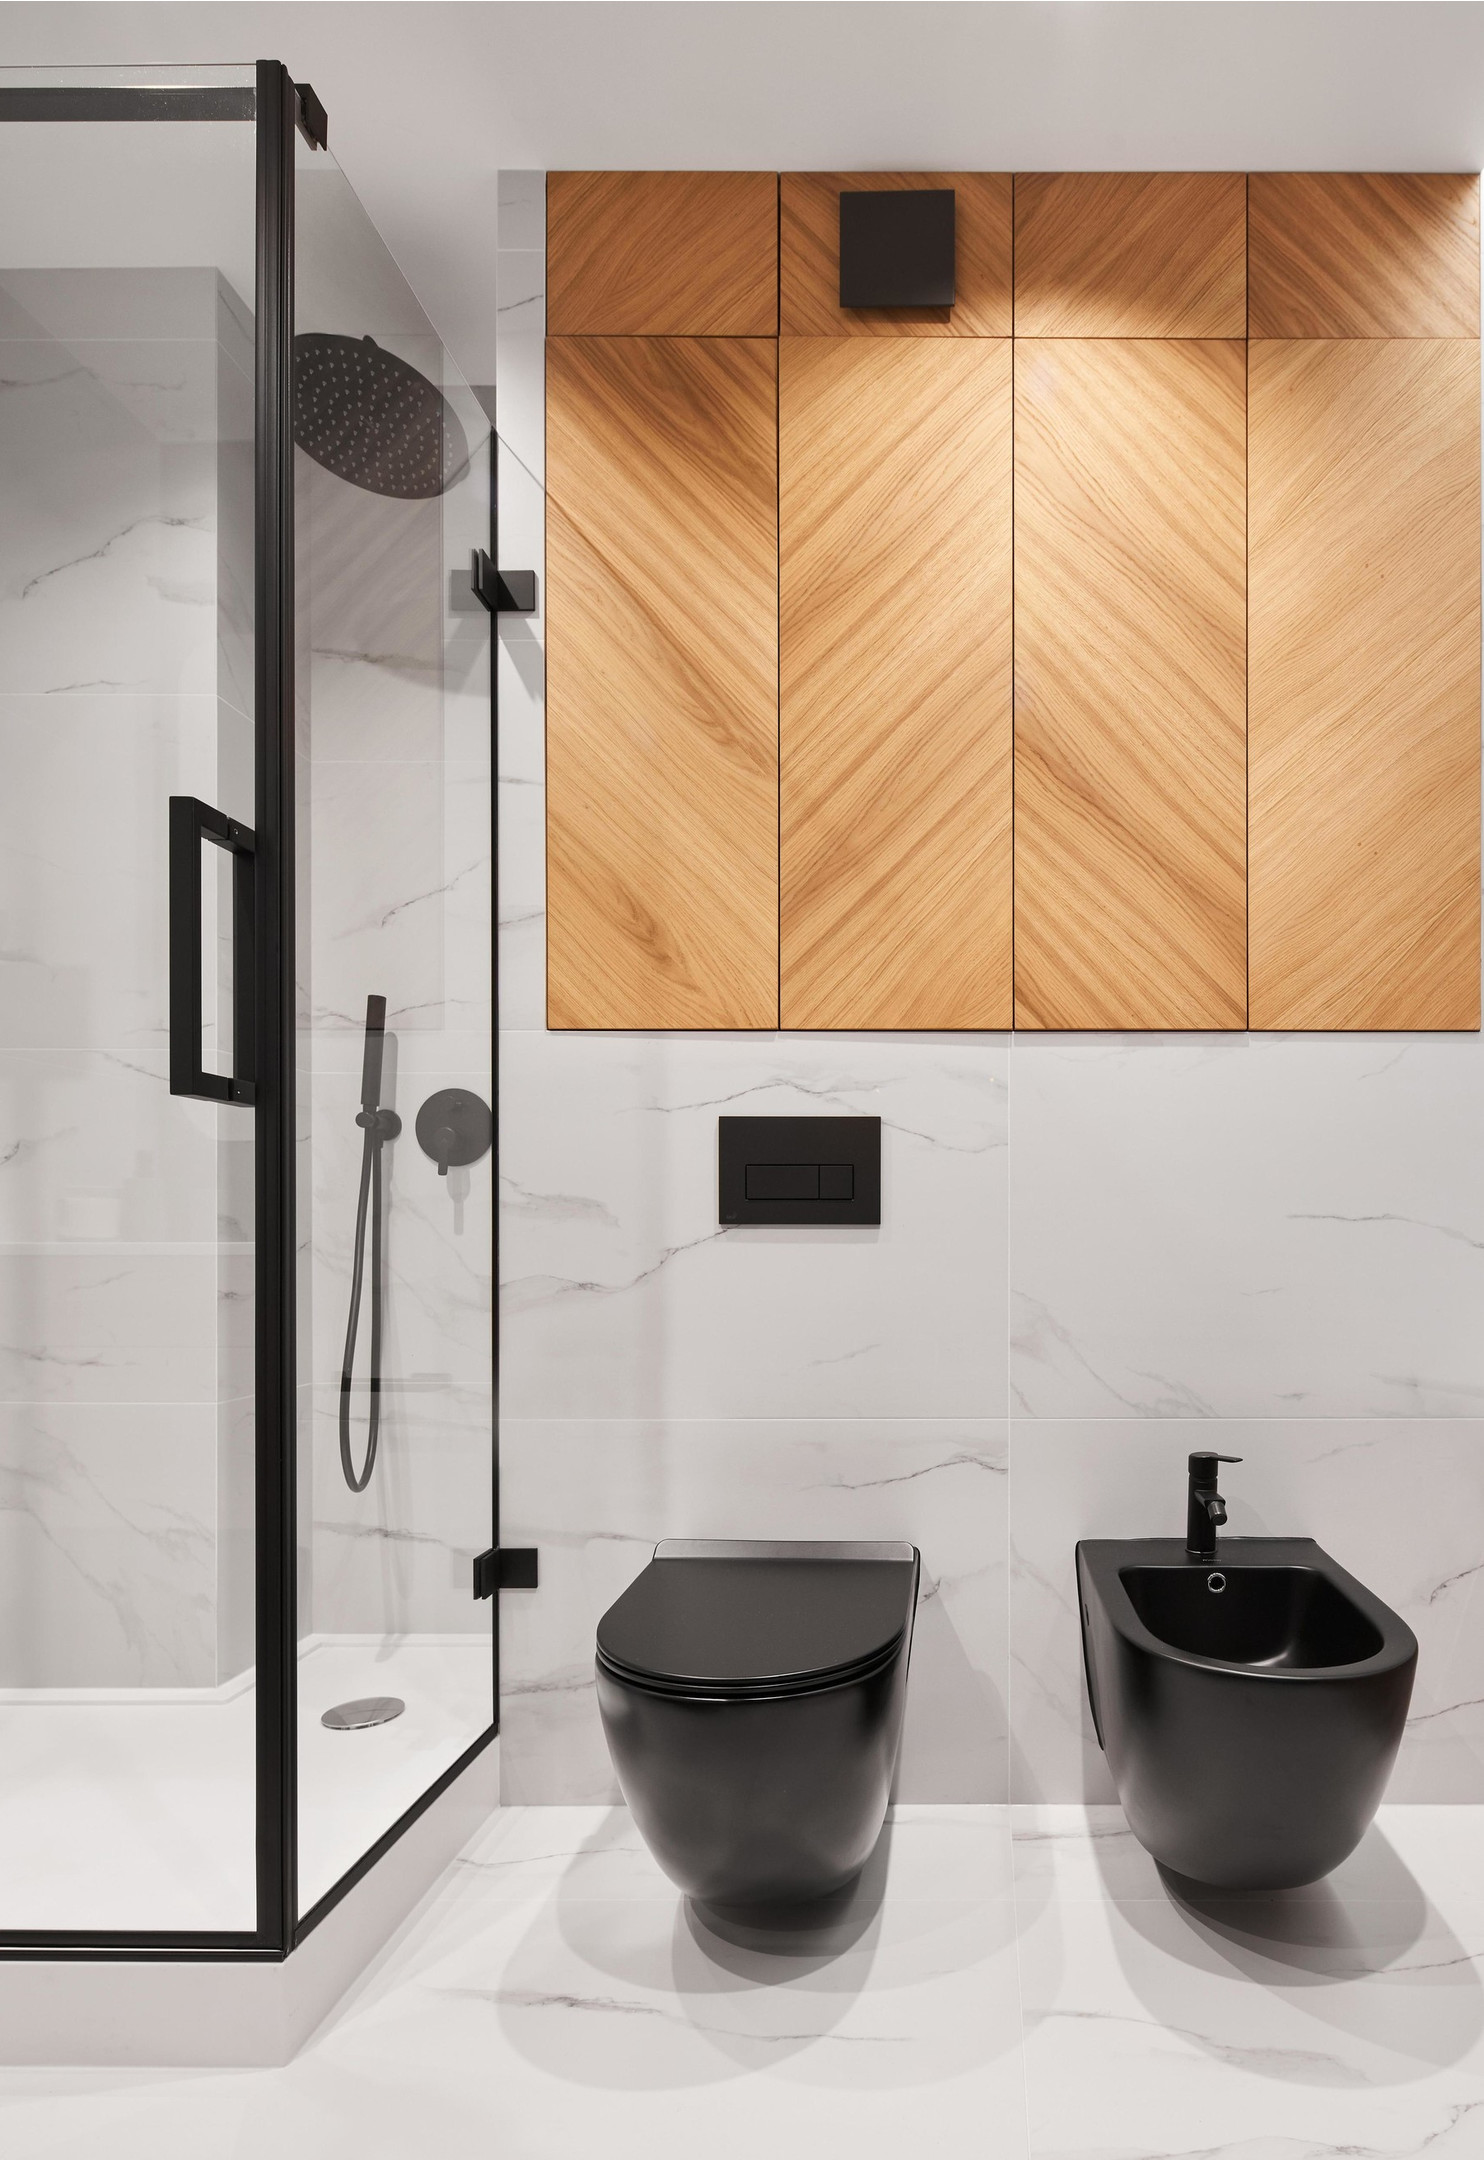 Phòng tắm và nhà vệ sinh của căn hộ được thiết kế '2 trong 1' với gam màu trắng - đen cổ điển, nhấn nhá sắc màu của vật liệu gỗ làm điểm nhấn trên sàn nhà và tường ốp đá cẩm thạch. 